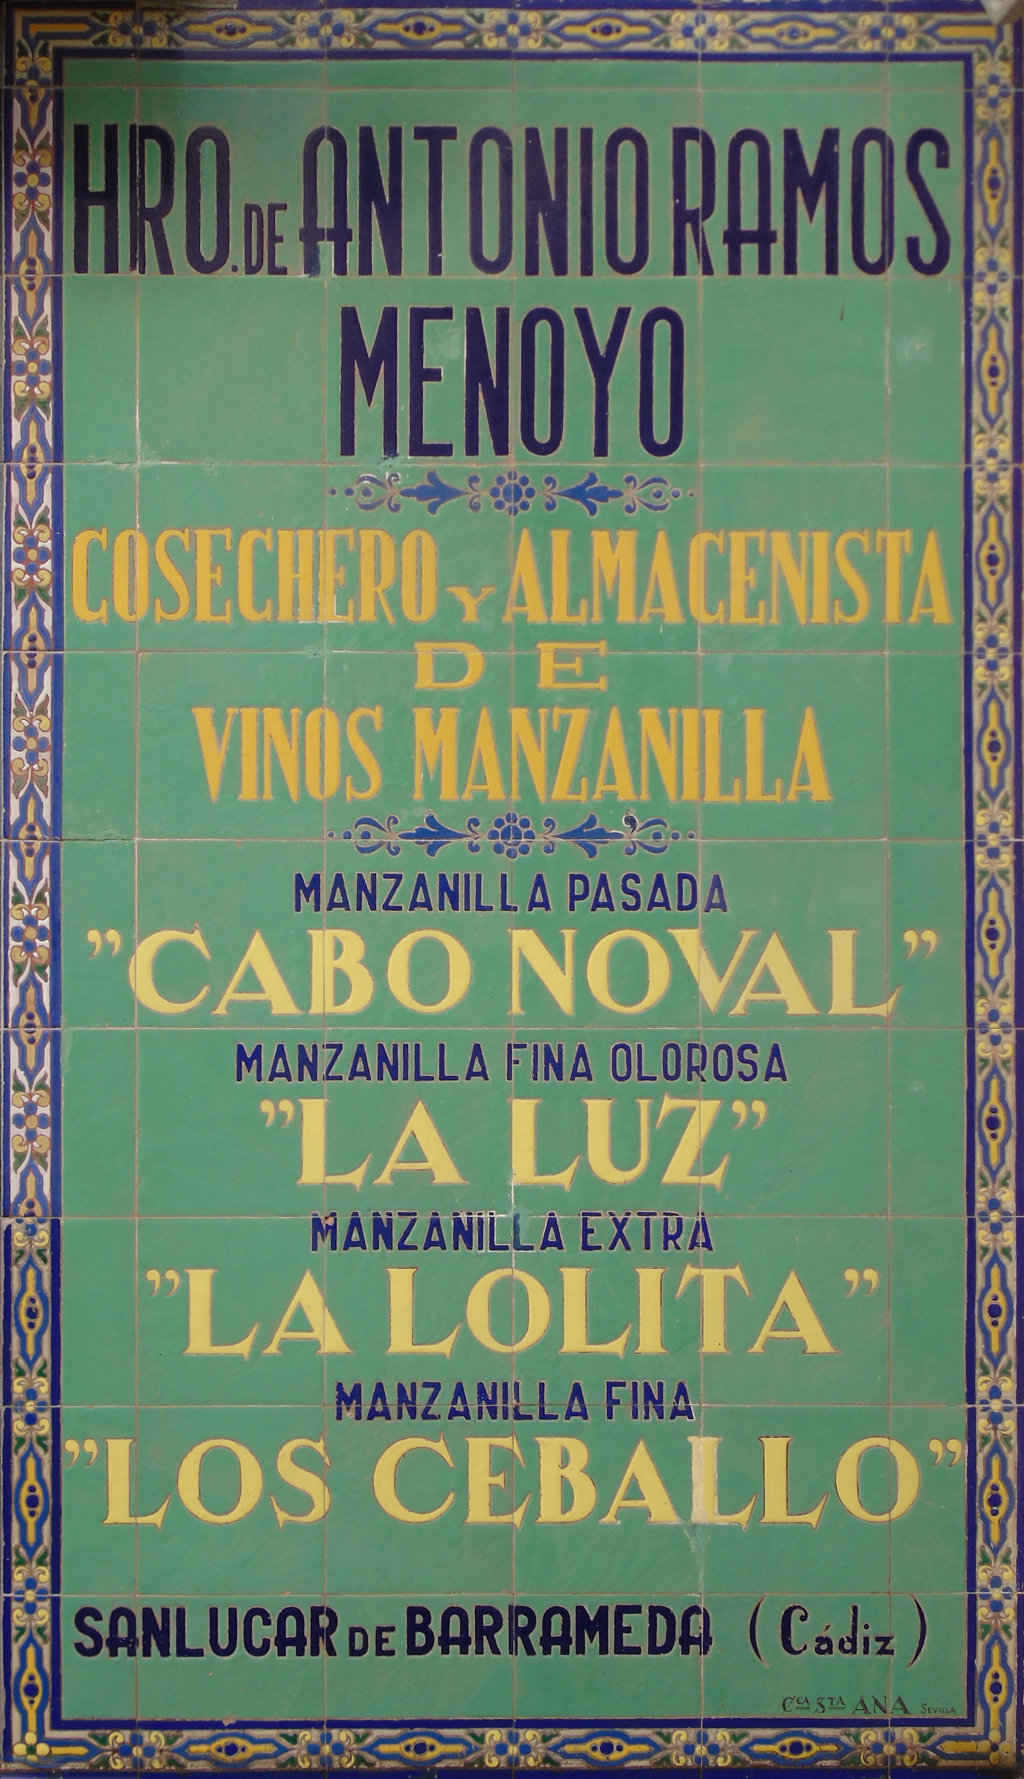 01437. Panel publicitario. Heredero de Antonio Ramos Menoyo. Bodega Los Claveles. Sevilla.